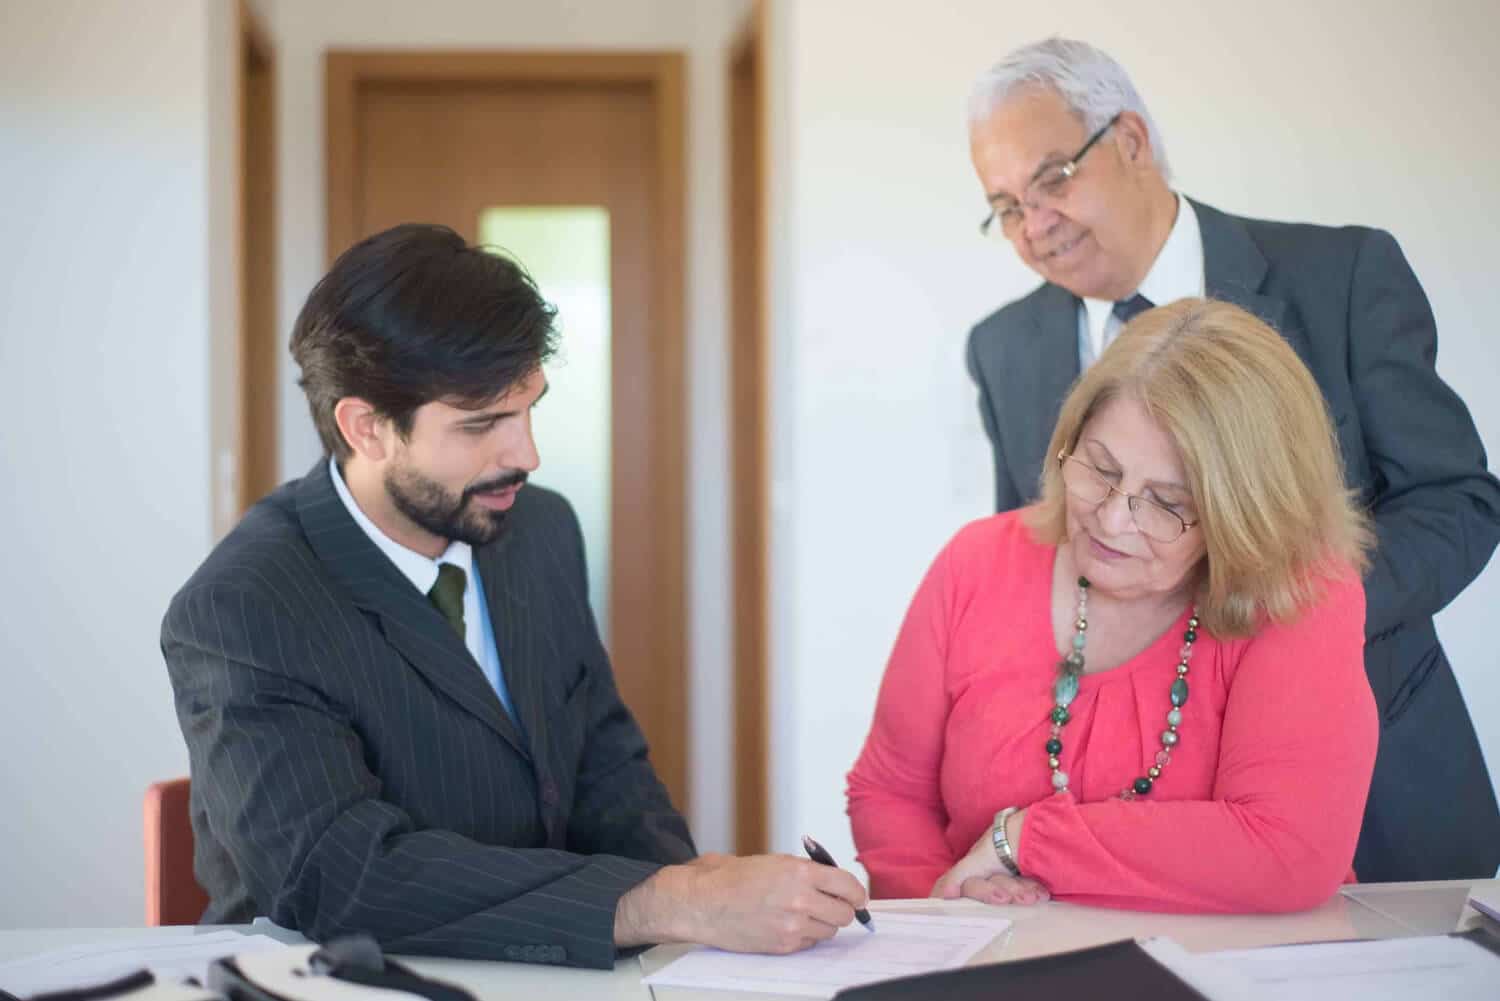 Femme signant un contrat devant un chef d'entreprise pour illustrer l'aide que peut apporter le coaching en entreprise dans le développement d'une société familiale